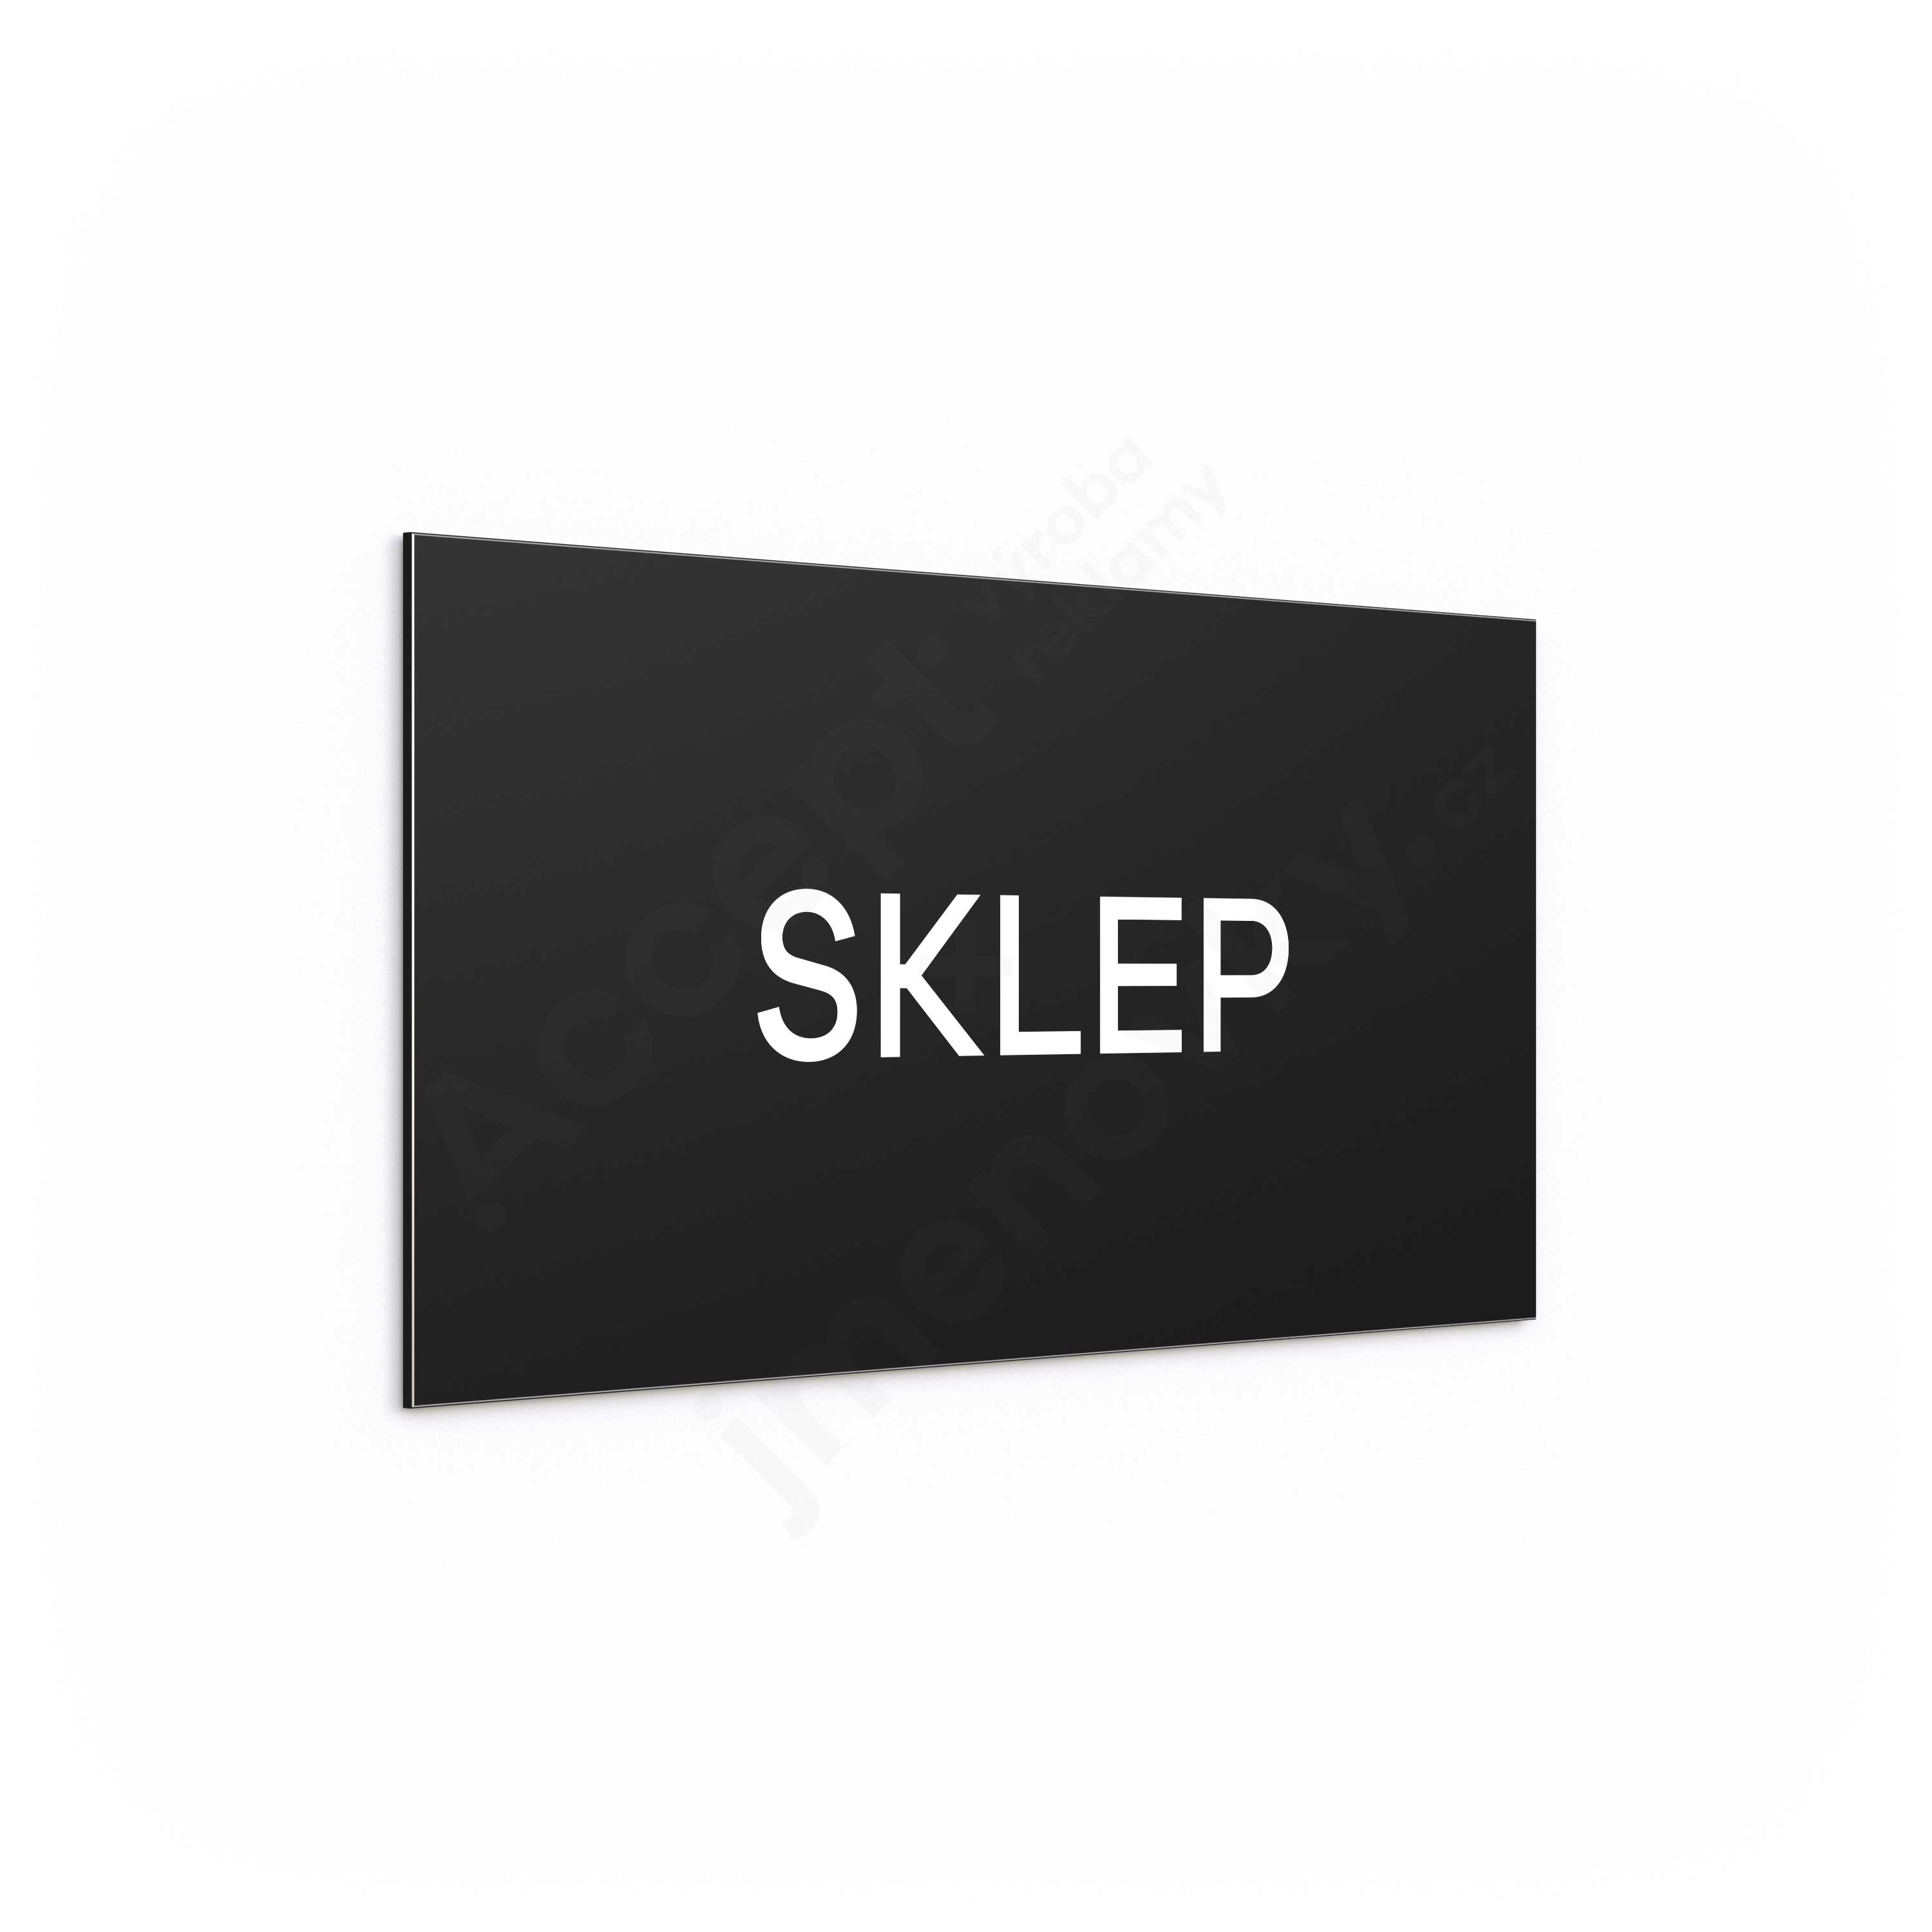 Označení podlaží "SKLEP" - černá tabulka - bílý popis